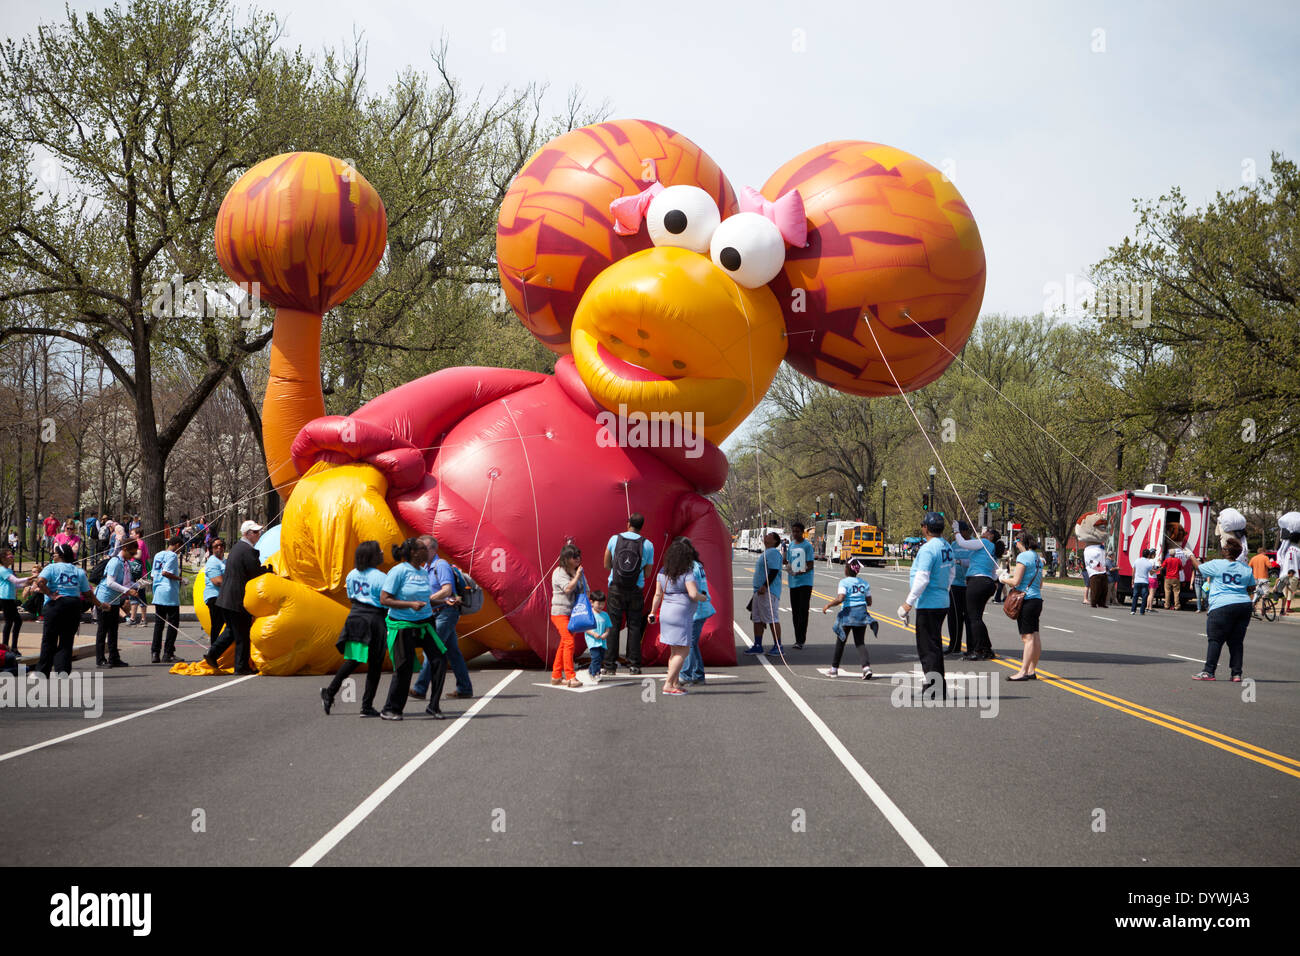 Inflating balloon float at parade Stock Photo